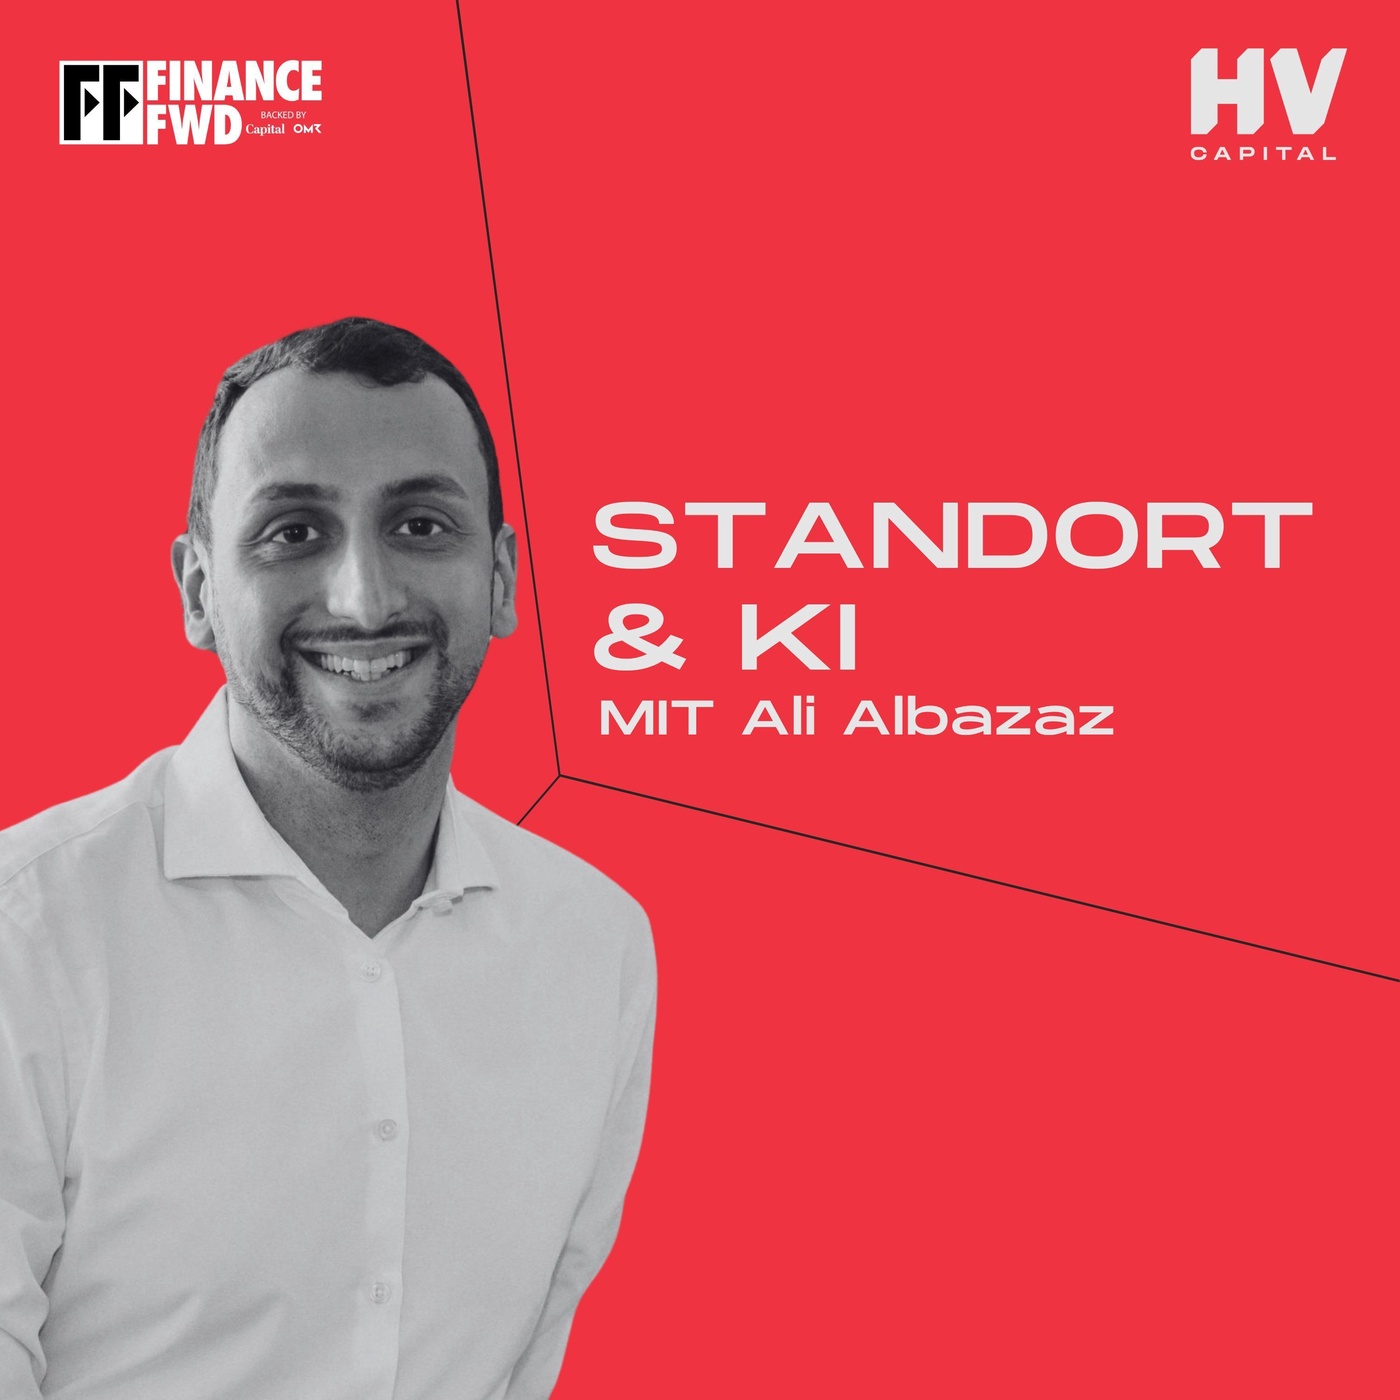 Wie baut man eine KI-Firma und findet den perfekten Standort? - mit Inkitt-Gründer Ali Albazaz